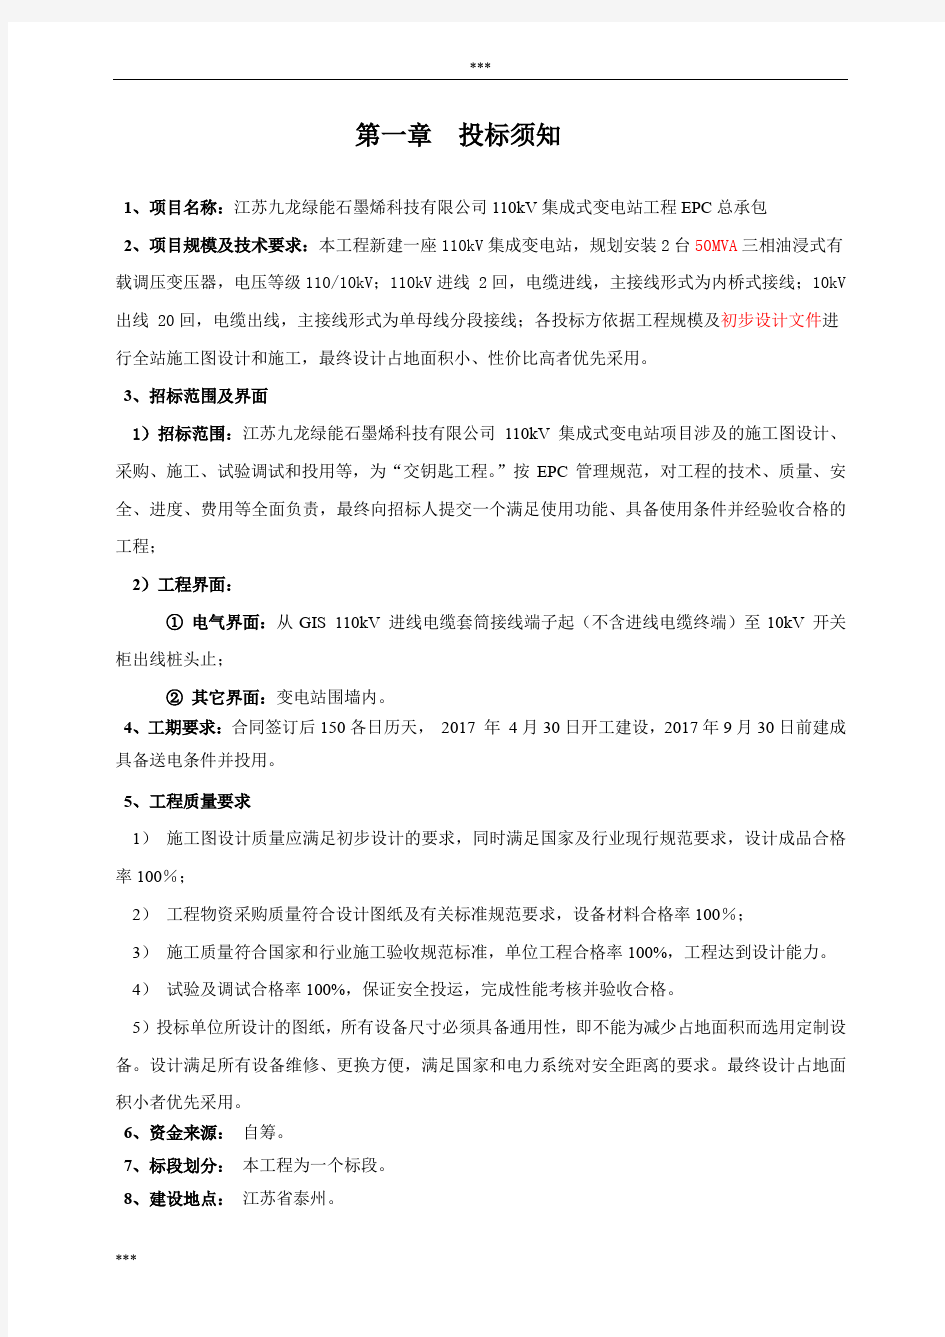 九龙变电站工程项目EPC招标文件